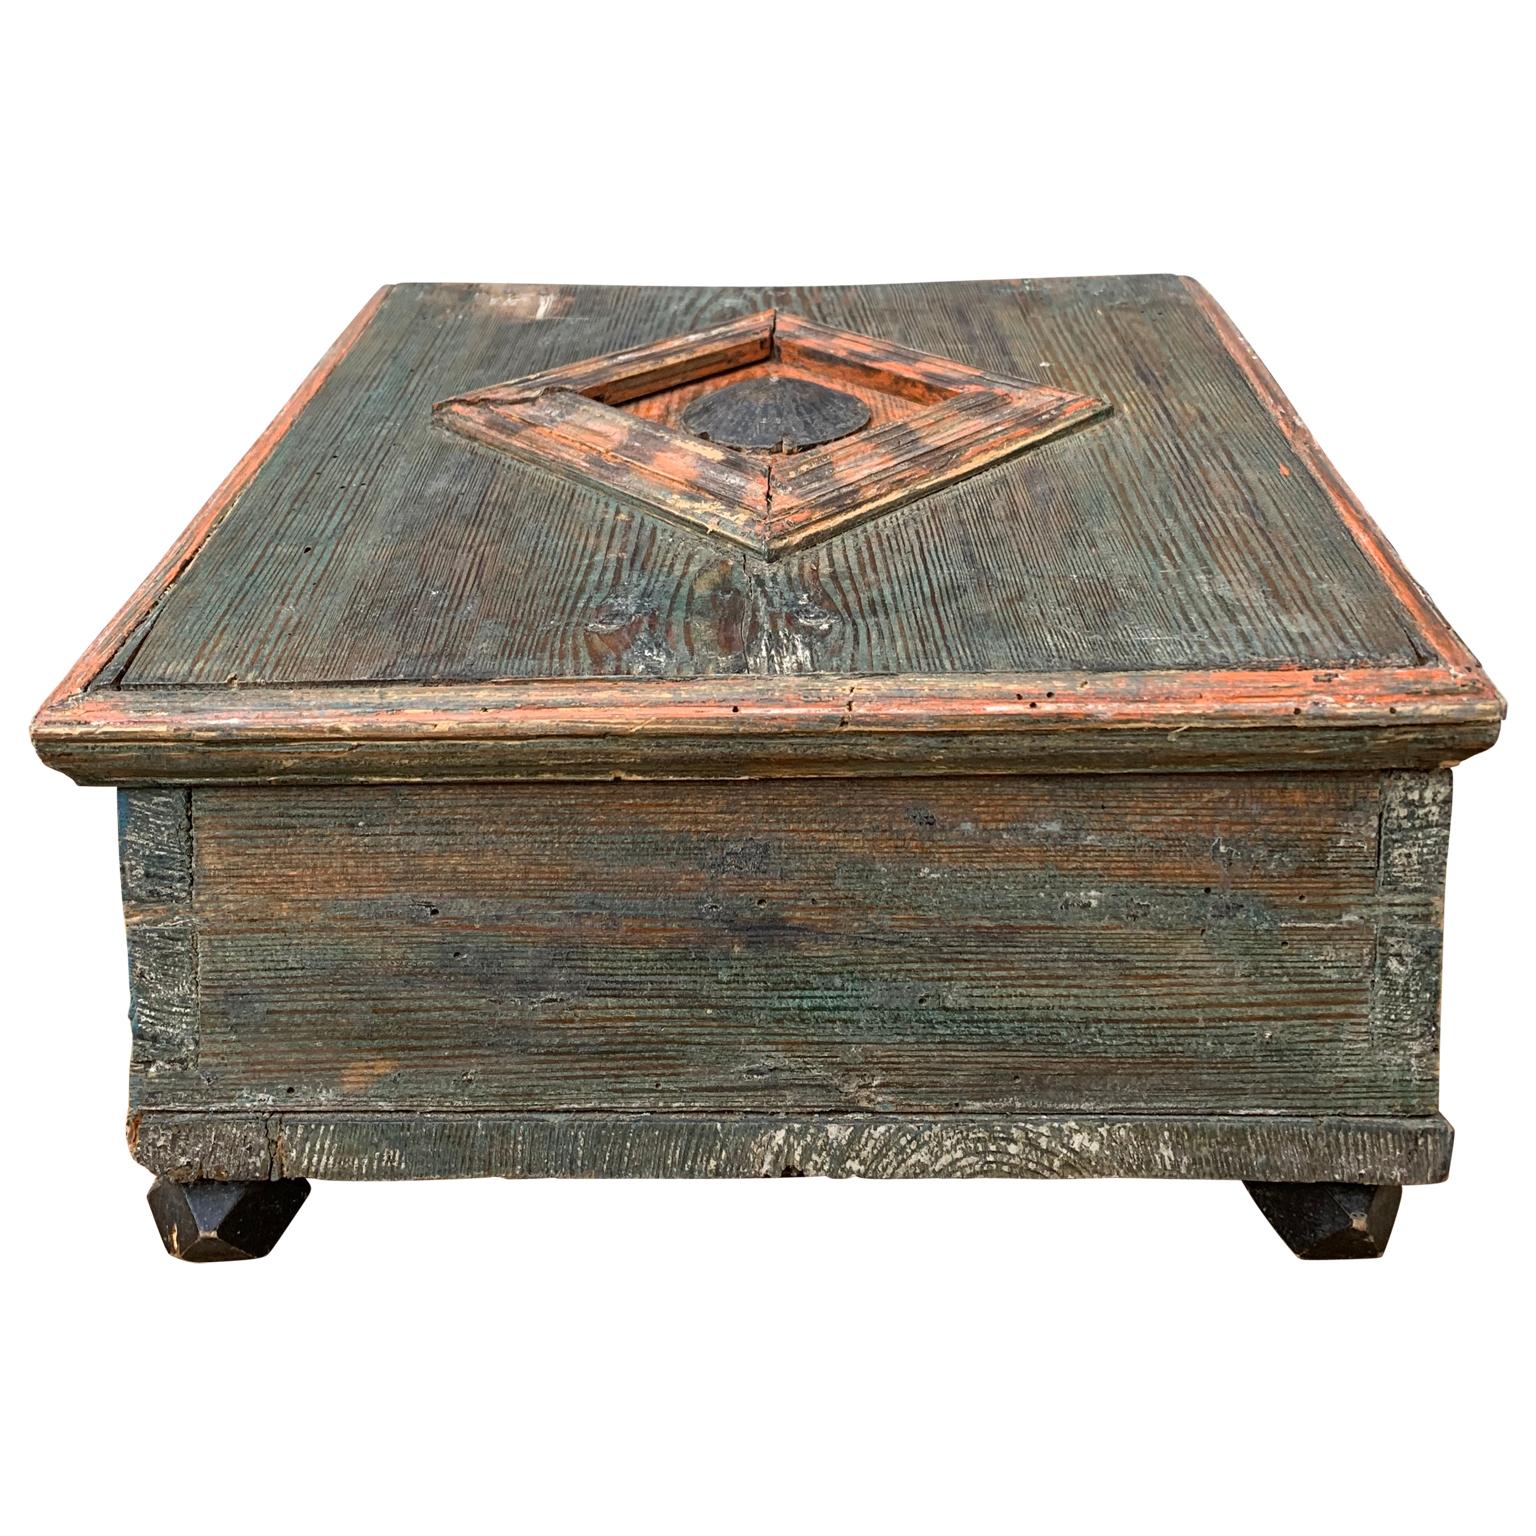 Une boîte originale suédoise d'art populaire peinte. À partir du début du 19e siècle, il a probablement été utilisé pour conserver des fournitures d'écriture et du matériel de bureau.